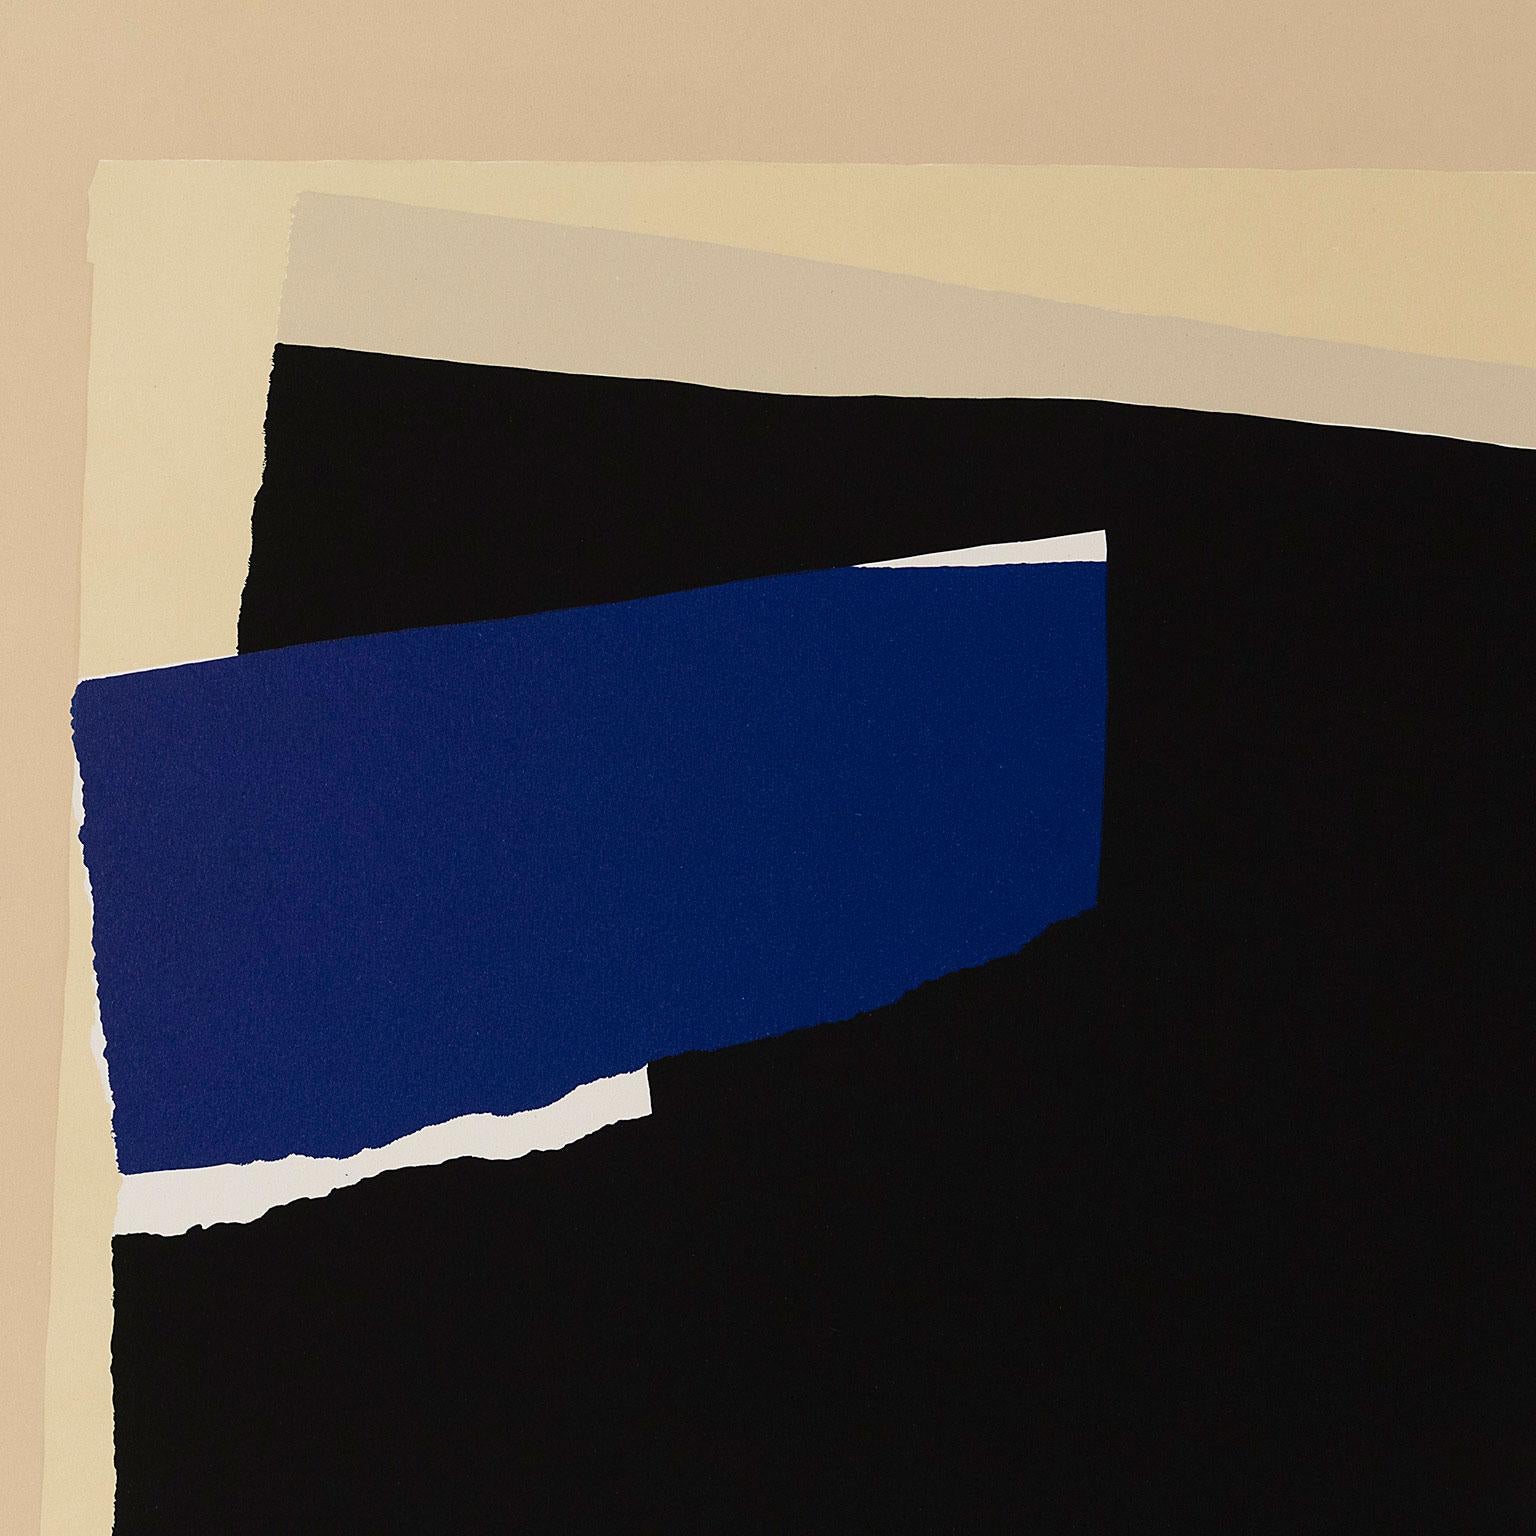 Robert Motherwell (1915-1991) forme avec Jackson Pollock, Mark Rothko et Willem de Kooning le quatuor de peintres abstraits américains qui a radicalement défini l'abstraction et fait de New York le centre du monde de l'art pour la seconde moitié du